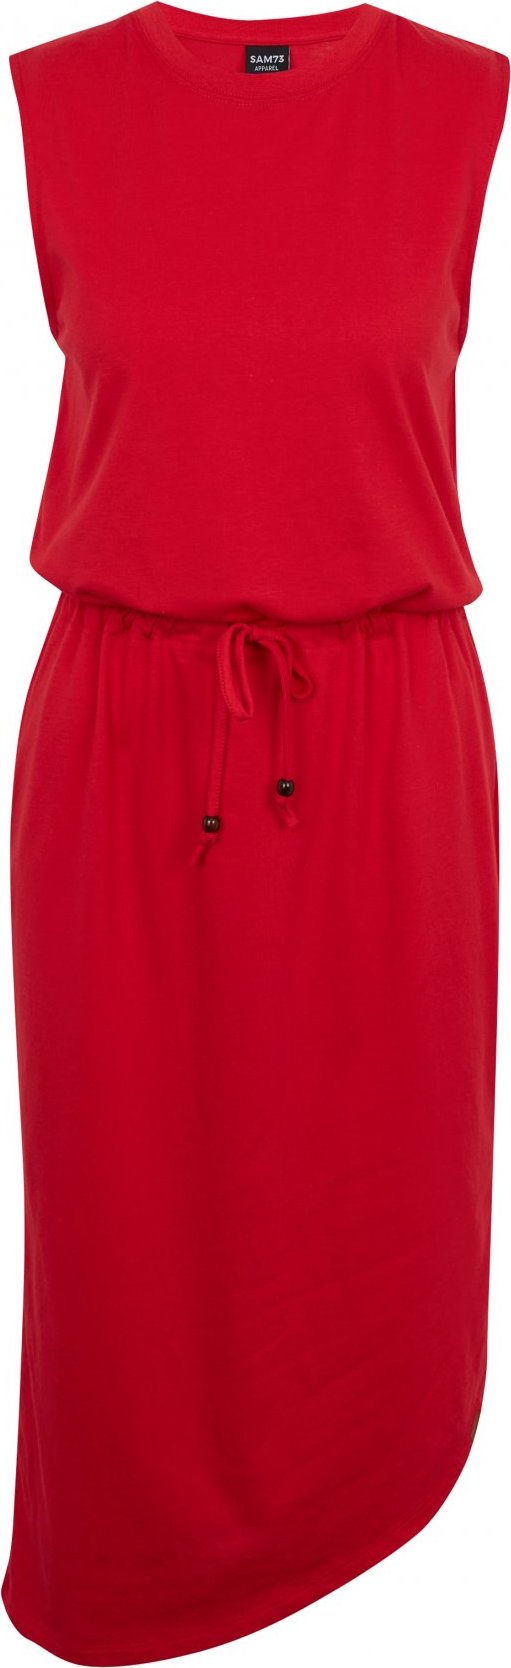 Dámské šaty SAM 73 Antlia červené Velikost: 2XL